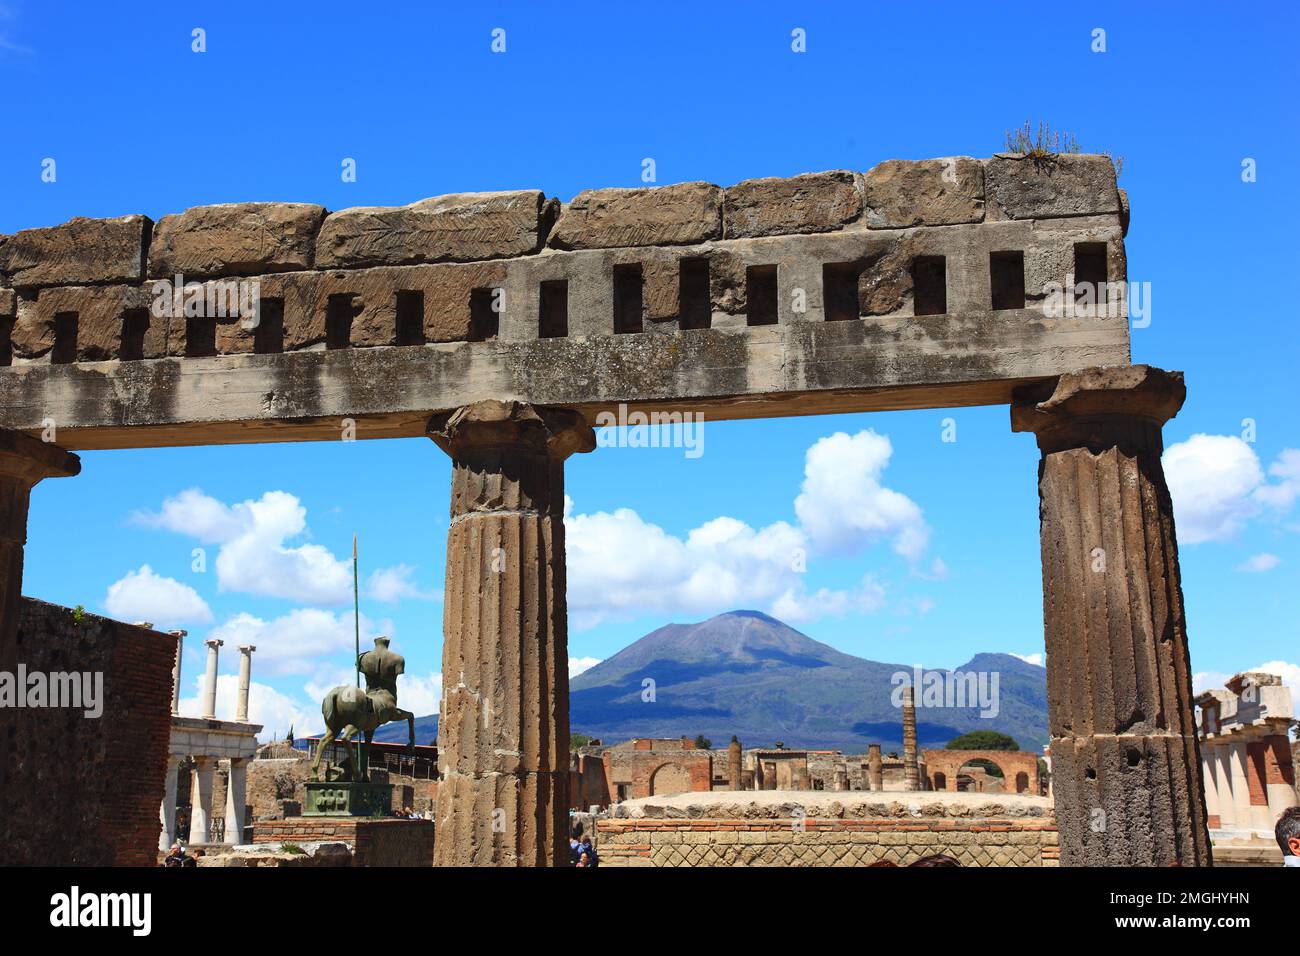 DAS Forum, Pompeji, antike Stadt in Kampanien am Golf von Neapel, beim Ausbruch des Vesuvs im Jahr 79 n. Chr. Verschüttet, Italien Banque D'Images